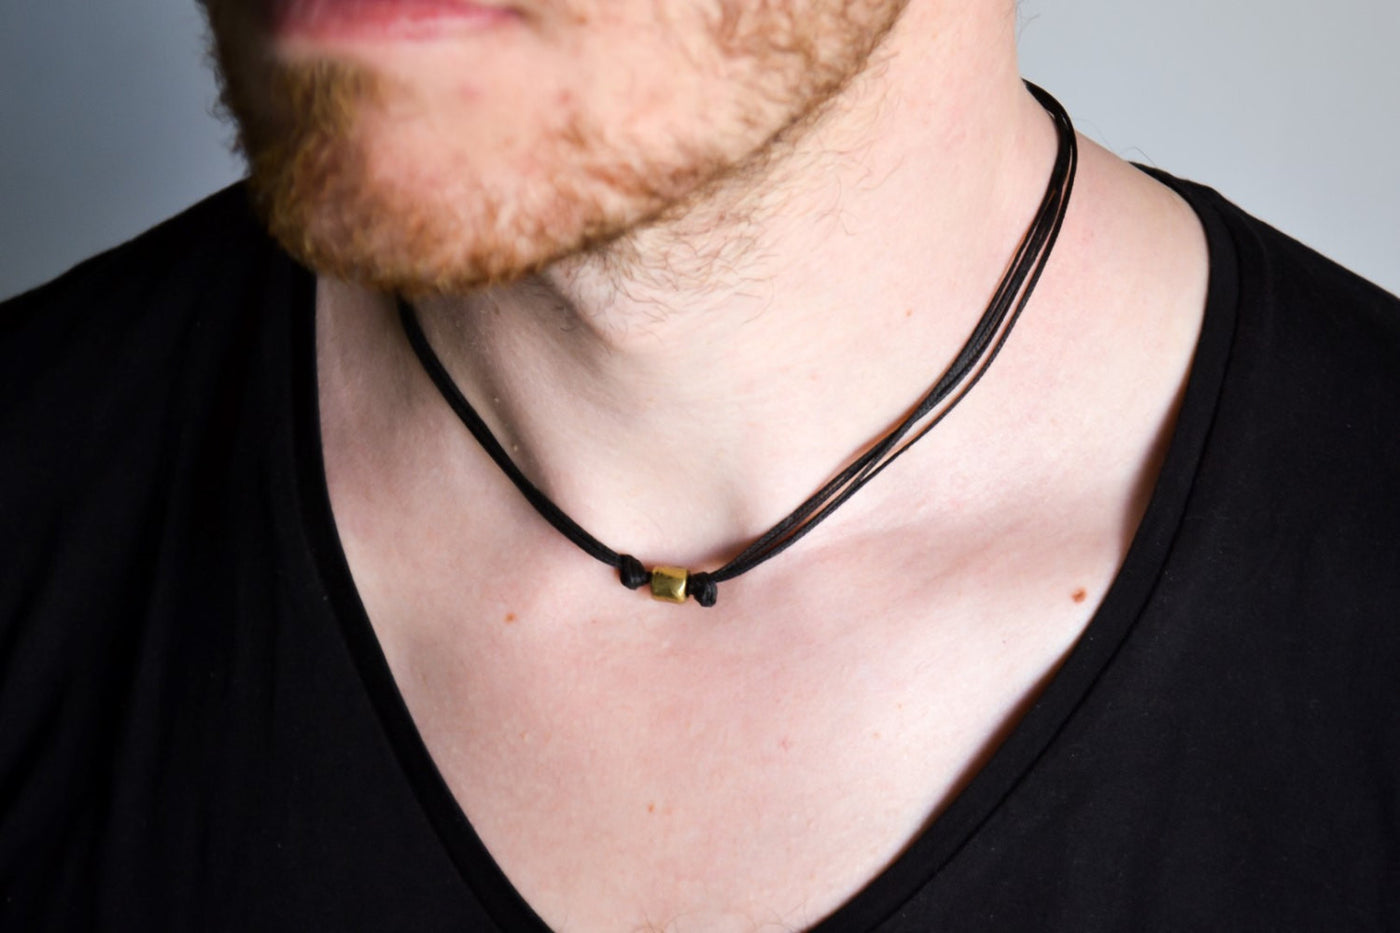 Men's Beach Choker Necklace